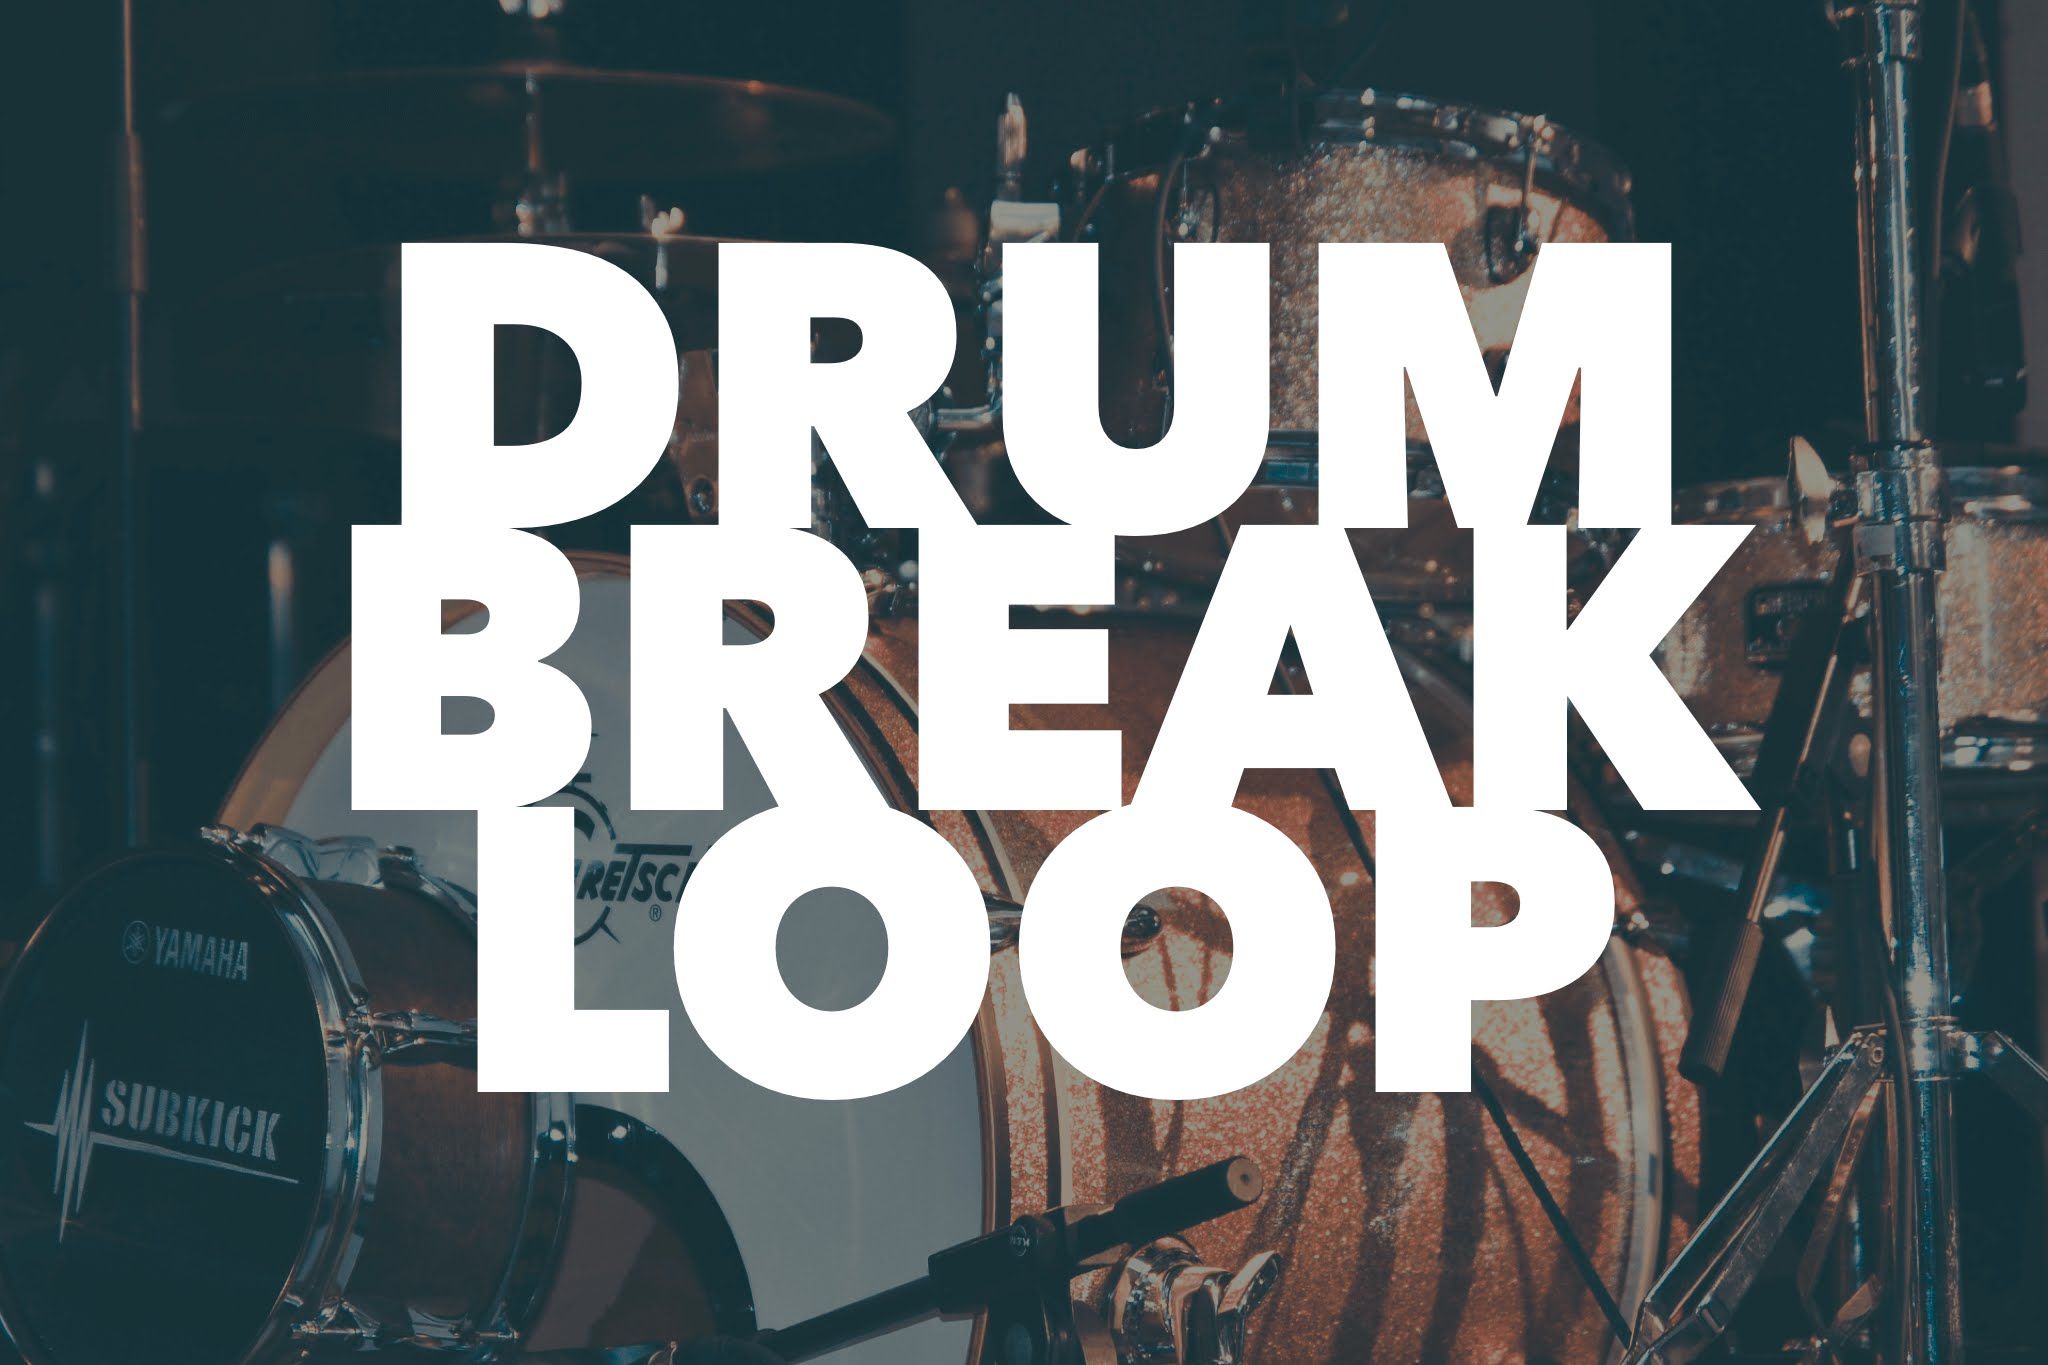 download reggae drum kits for garageband